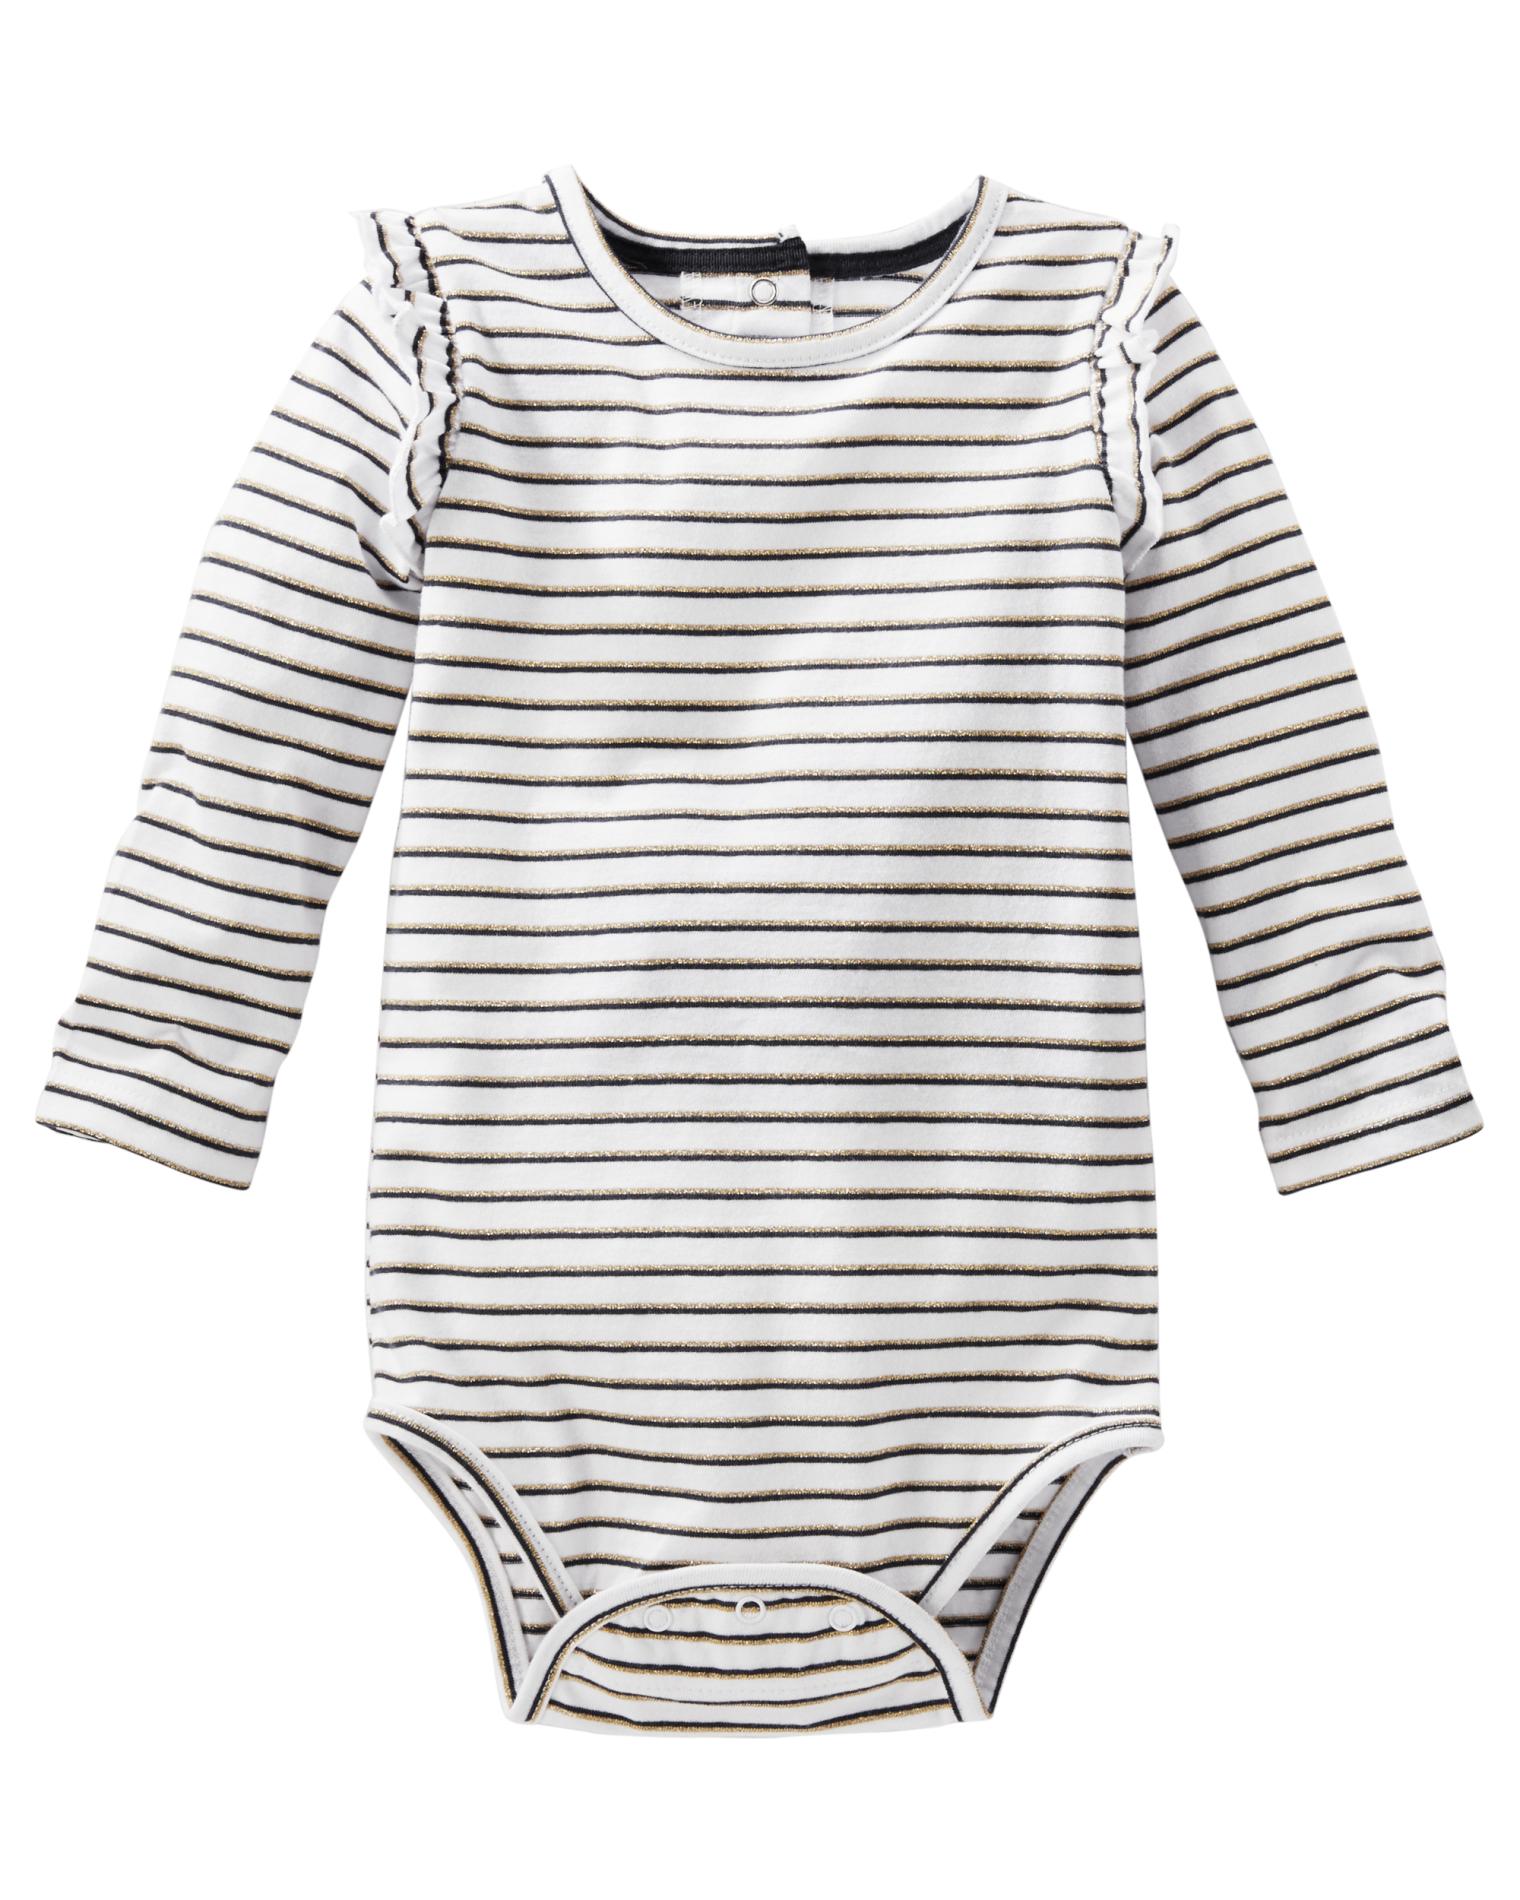 OshKosh Infant Girls' Bodysuit - Striped